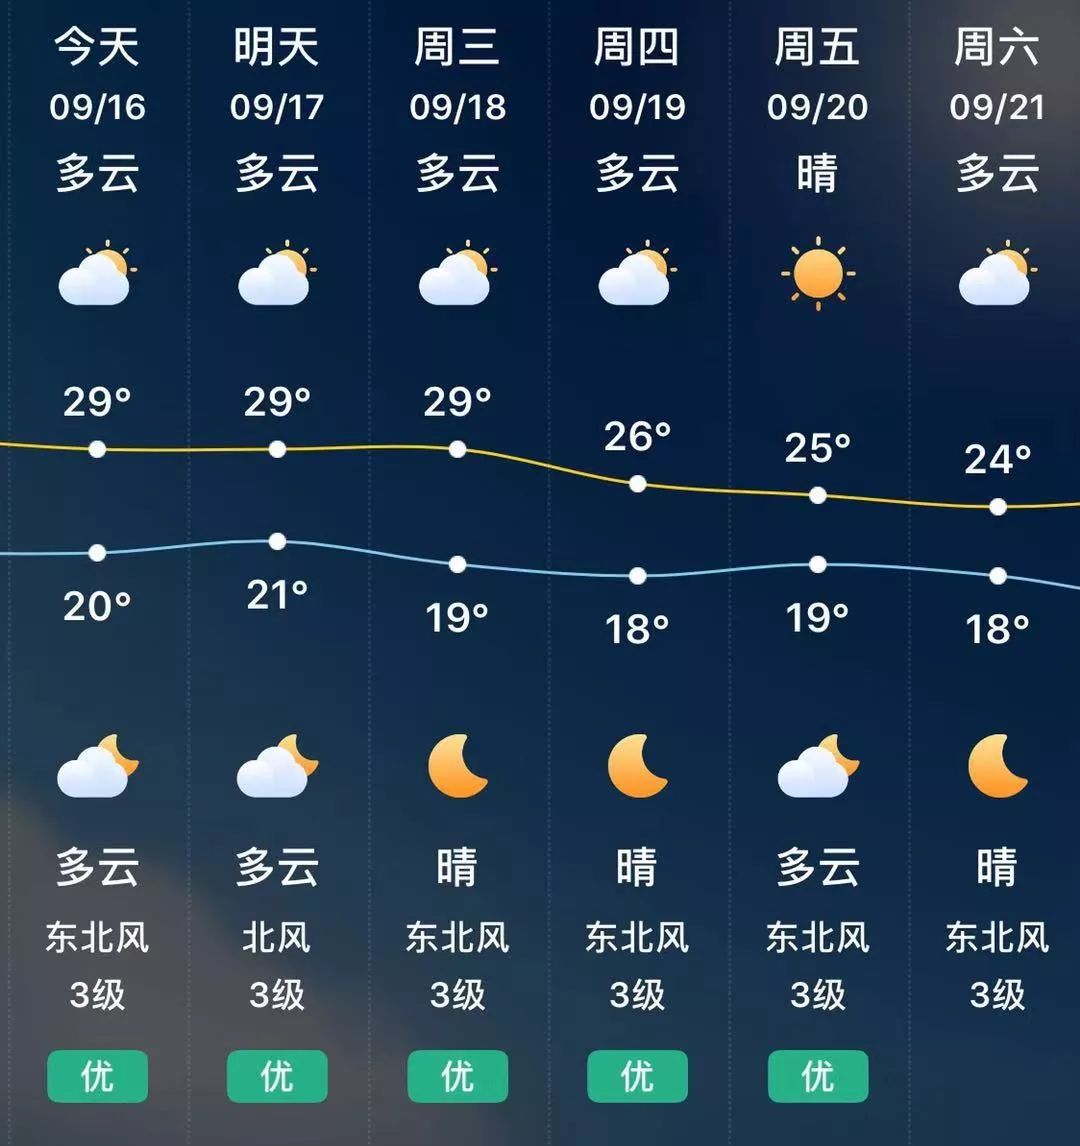 【一周天气】冷空气将至,江苏进入第一轮入秋冲刺